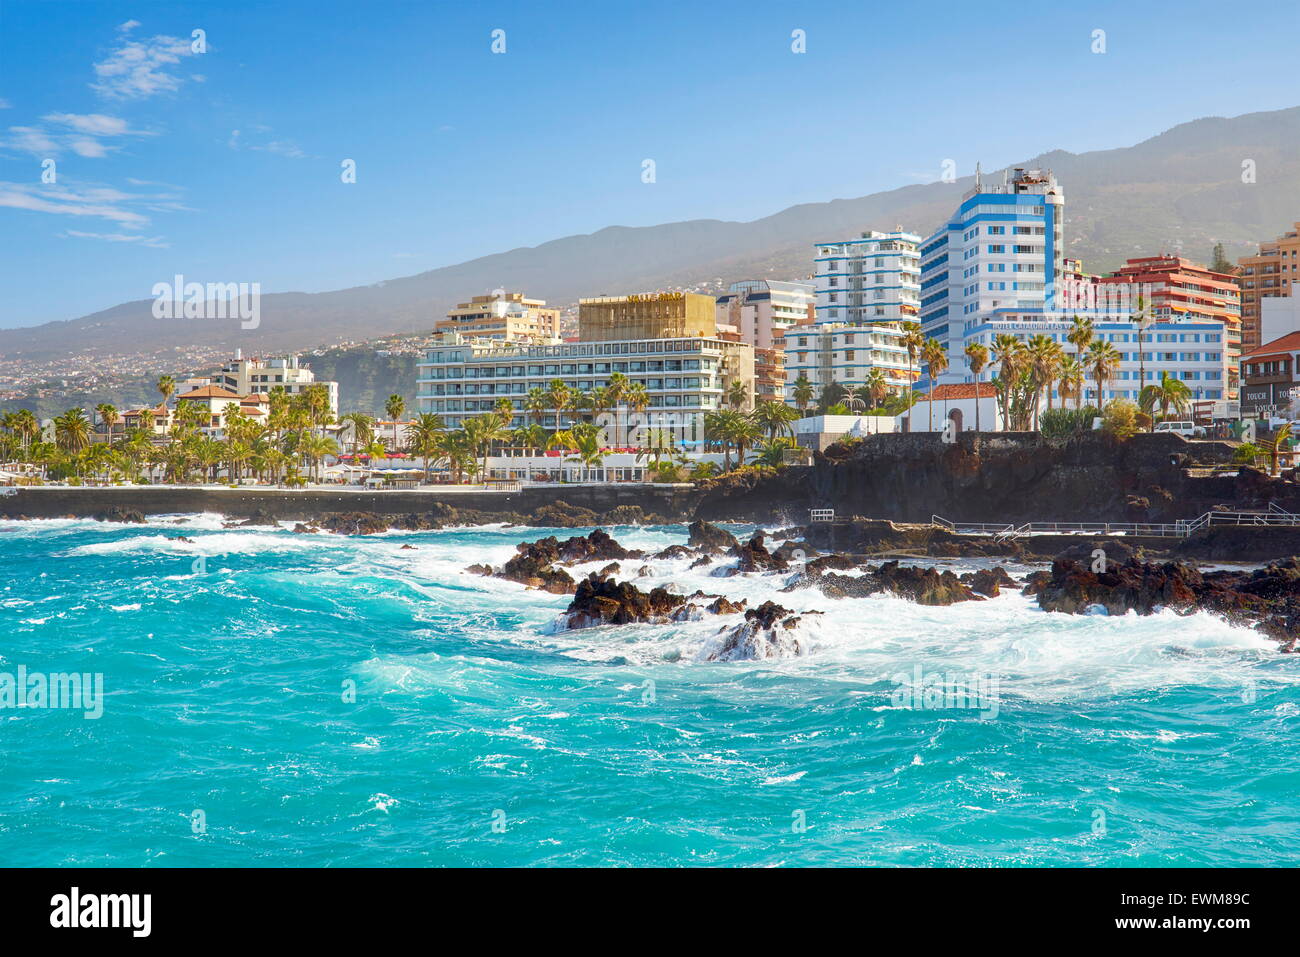 Puerto de la Cruz, Tenerife, Canaries, Espagne Banque D'Images